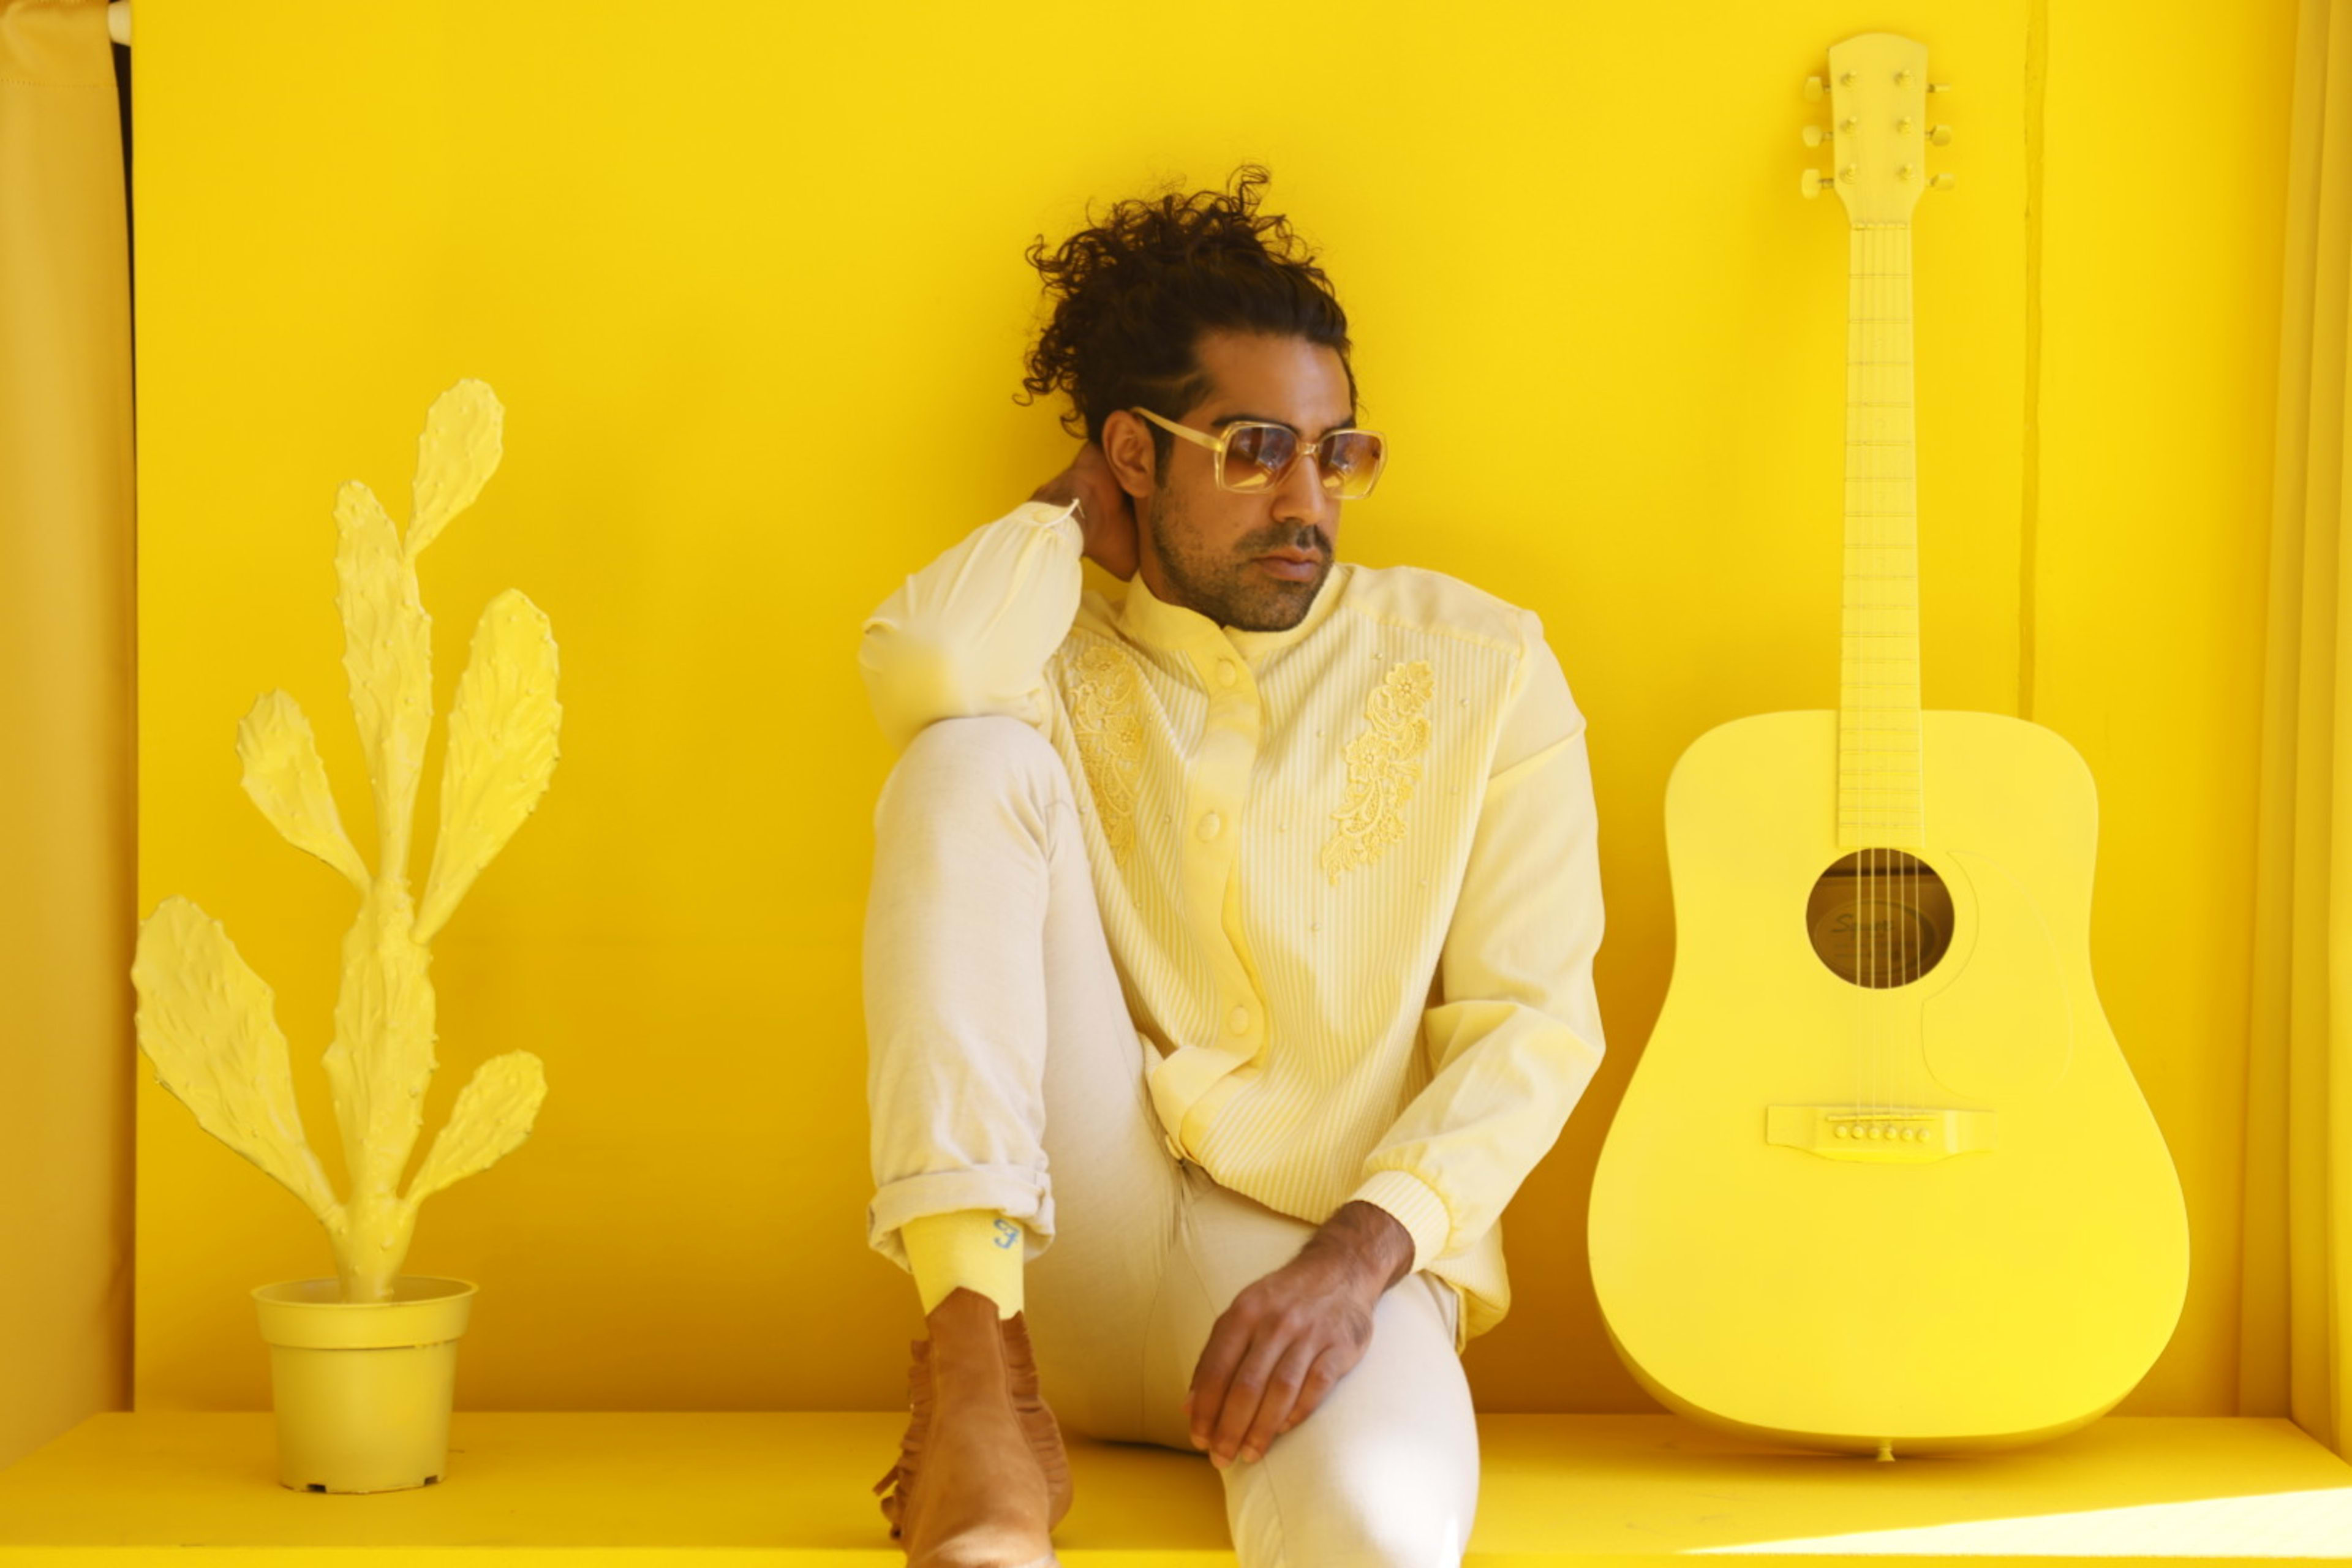 Ein Retro-Fotoshooting, bei dem ein Mann mit einer Gitarre auf einem gelben Regal sitzt.